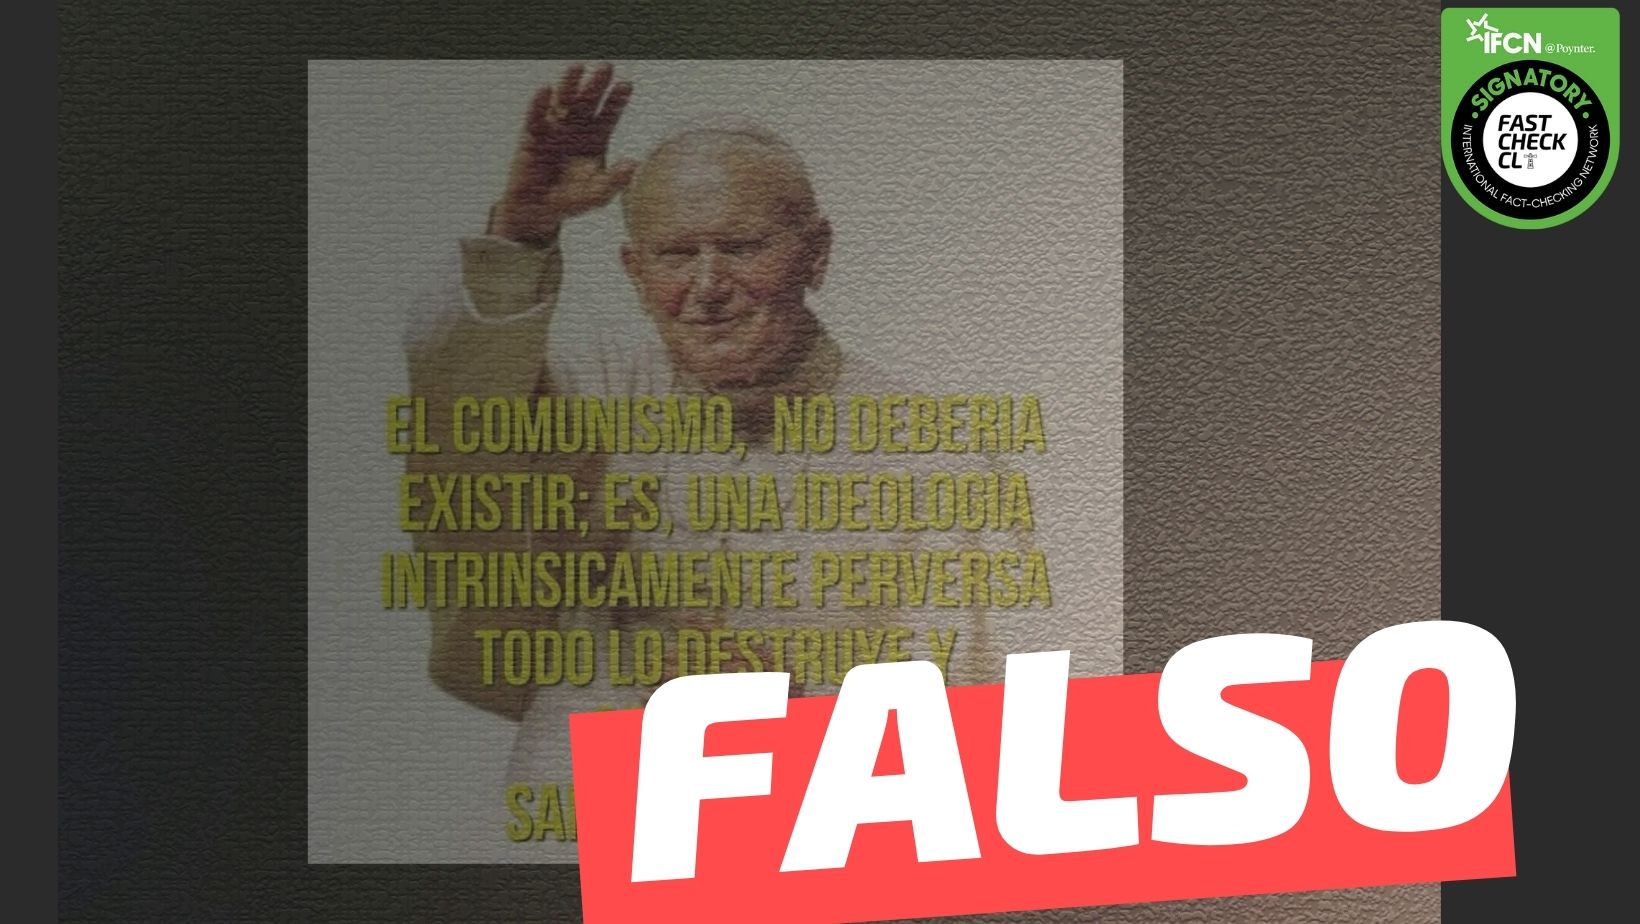 You are currently viewing Papa Juan Pablo II: “El comunismo no debería existir; es una ideología intrínsicamente perversa, todo lo destruye y corrompe”: #Falso